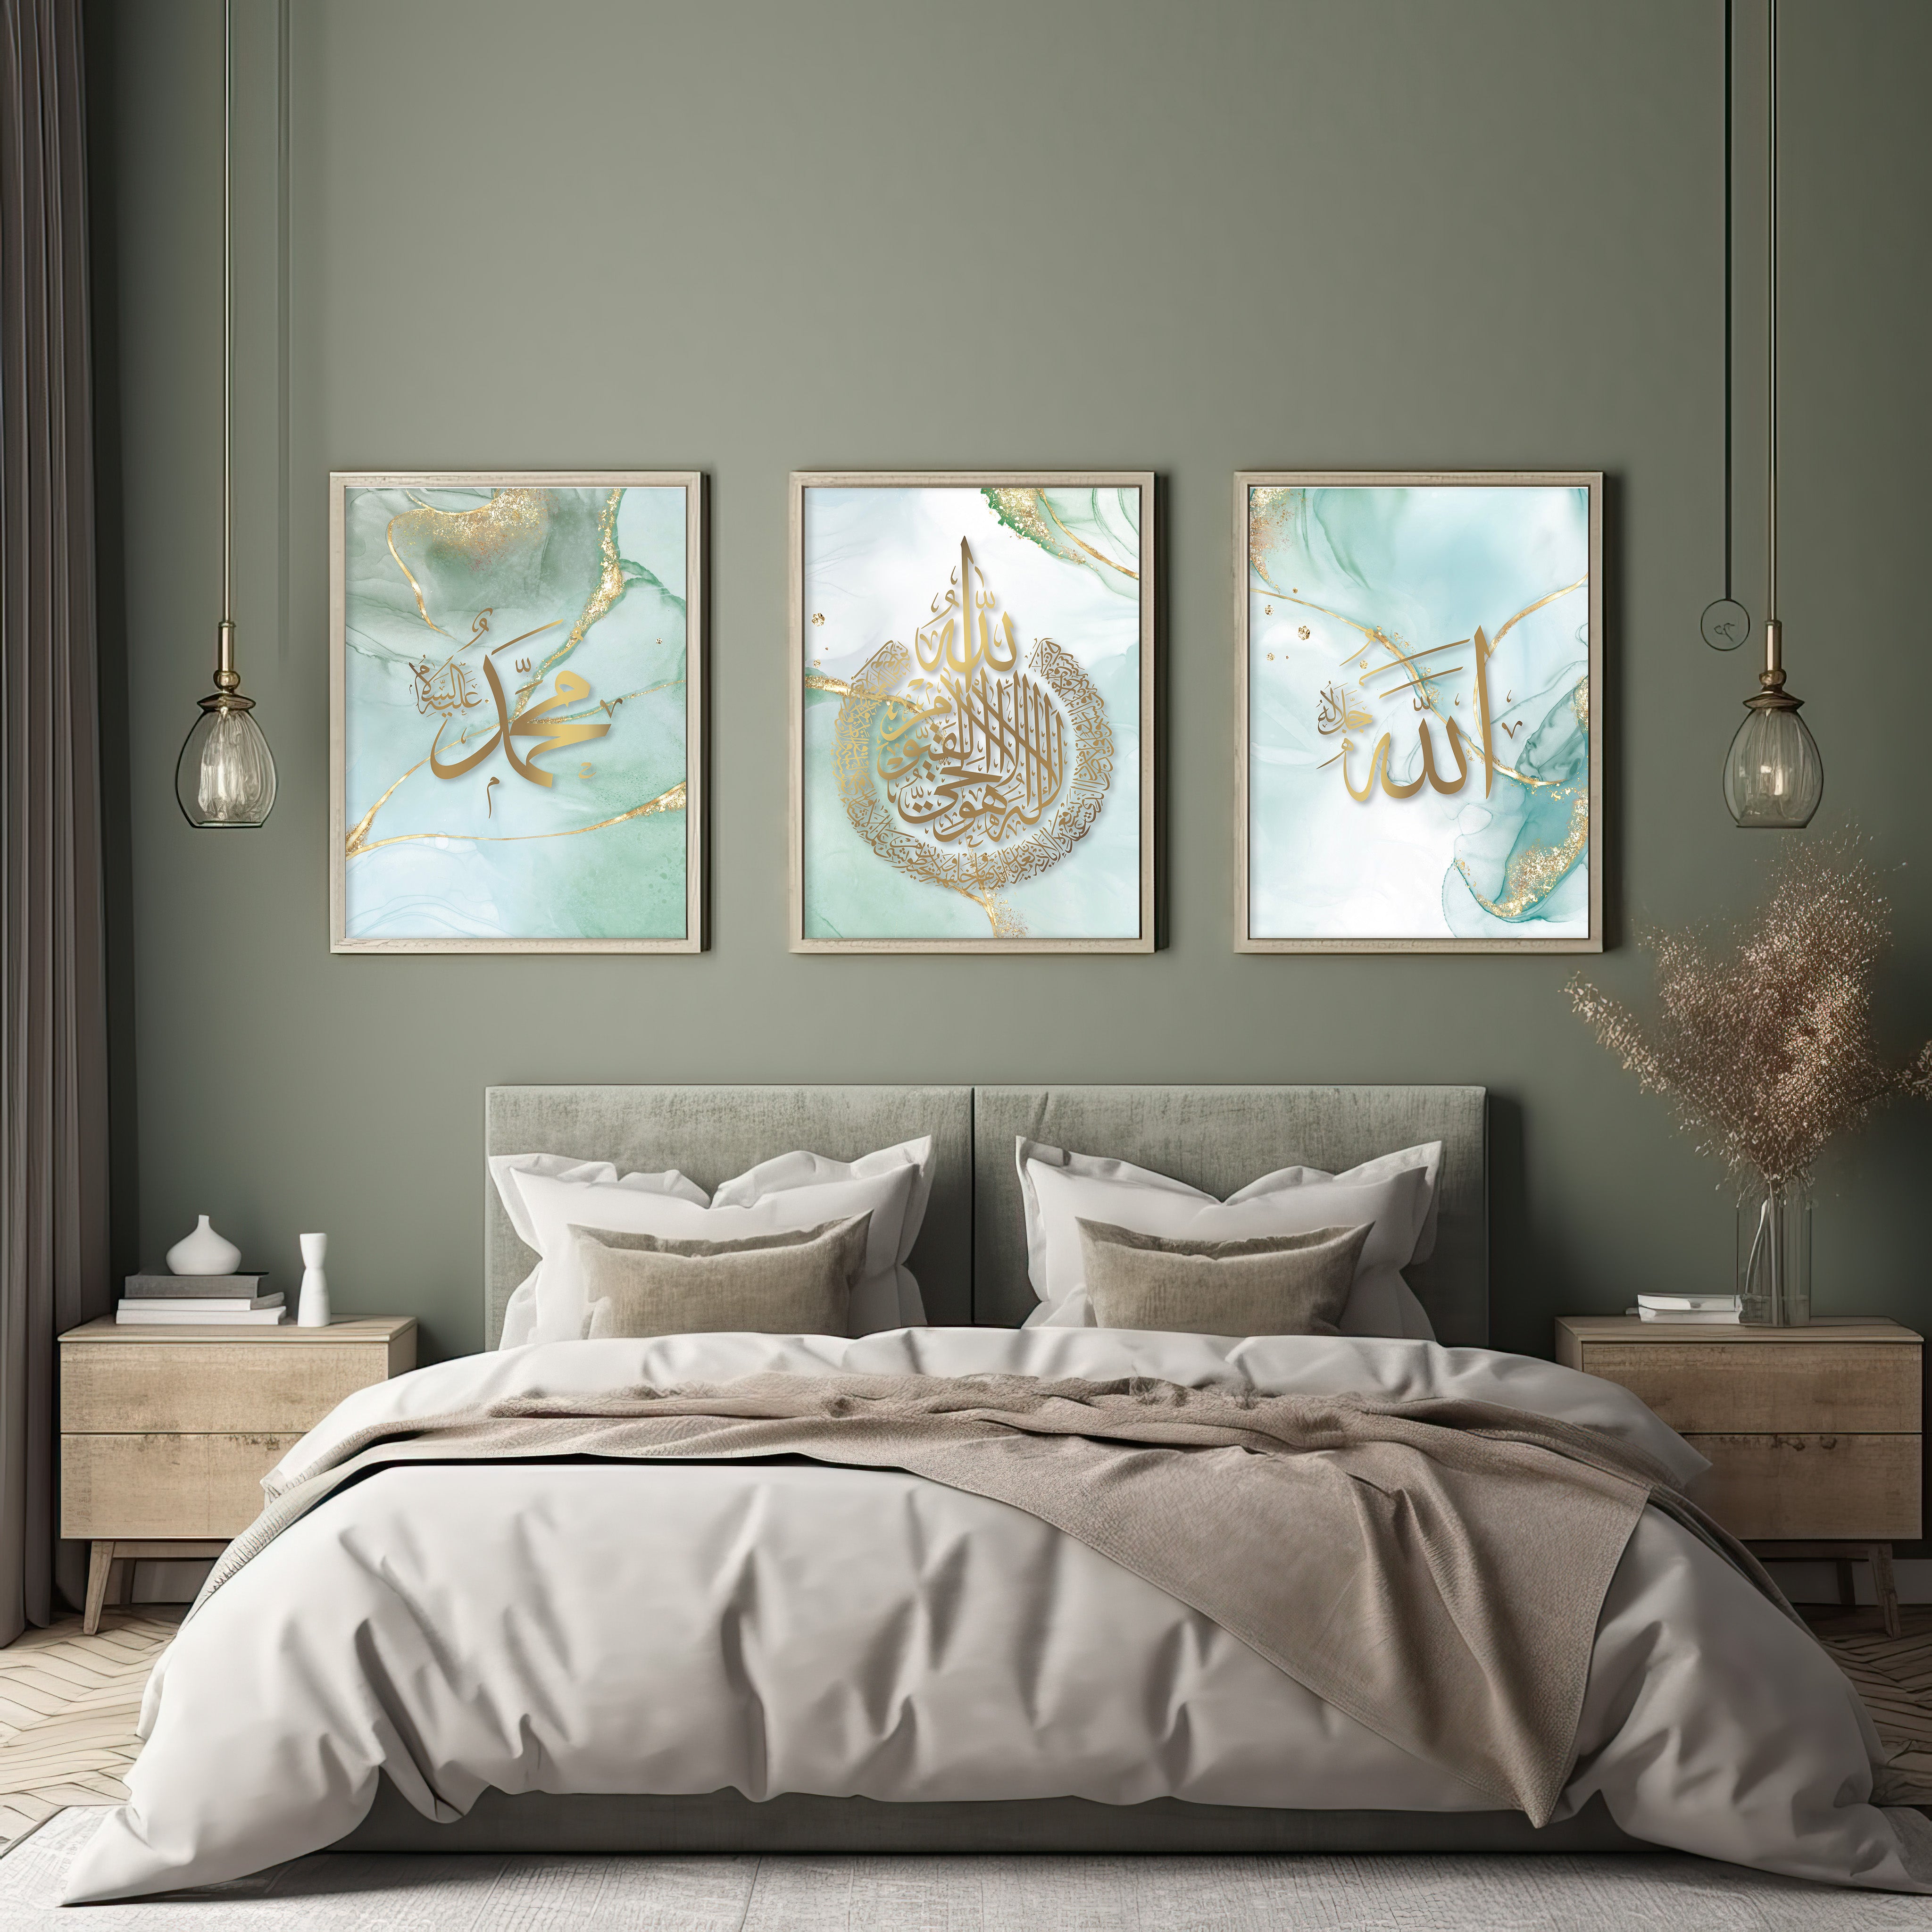 Mint Green Allah, Ayatul Kursi, Muhammad Wall Art Prints - Peaceful Arts UK